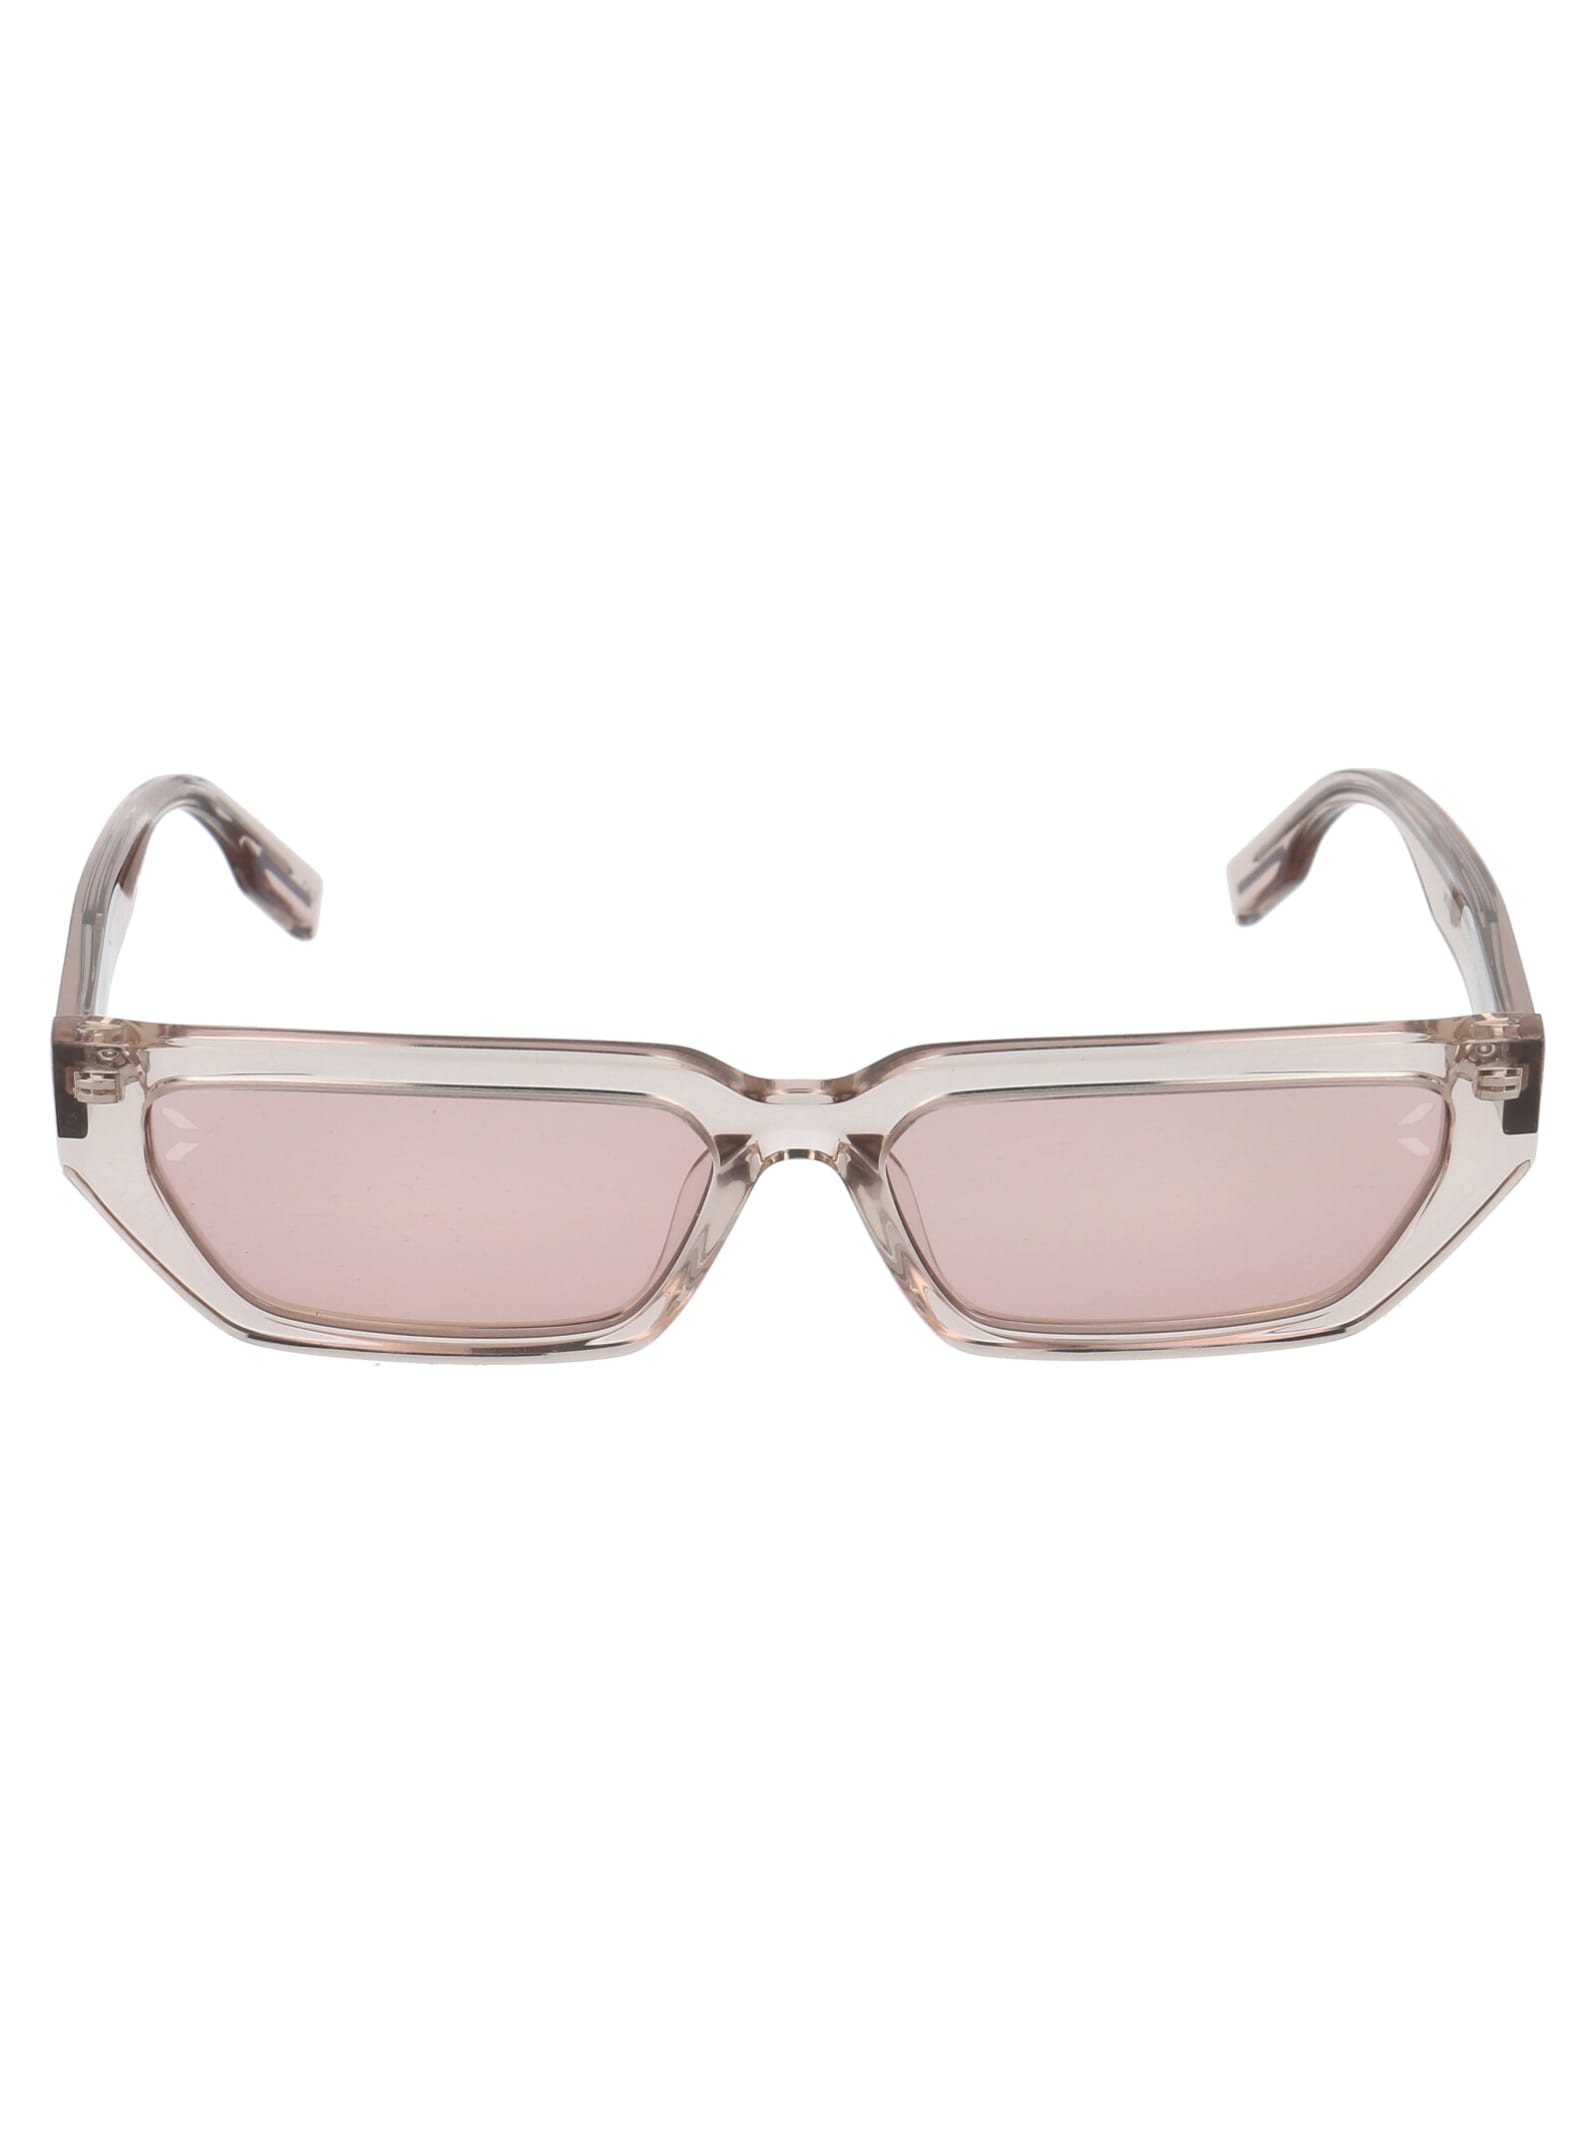 McQ Alexander McQueen Mq0302s Sunglasses